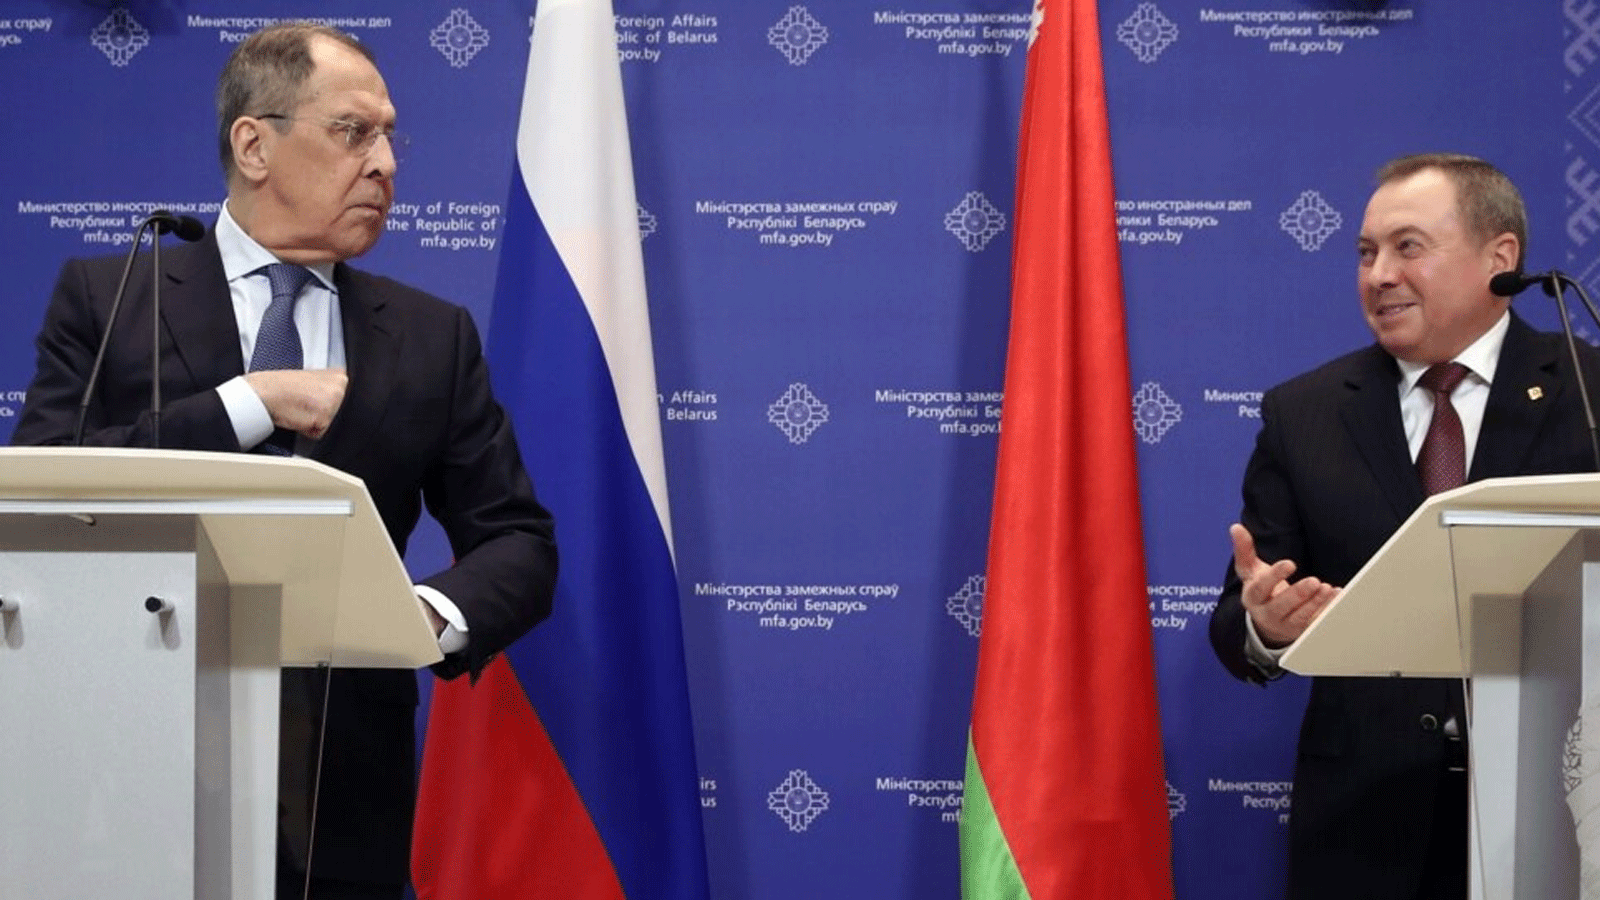 وزير الخارجية الروسي سيرغي لافروف (إلى اليسار) ونظيره البيلاروسي أولادزيمر ماكي يحضران مؤتمرا صحفيا عقب محادثاتهما في مينسك.